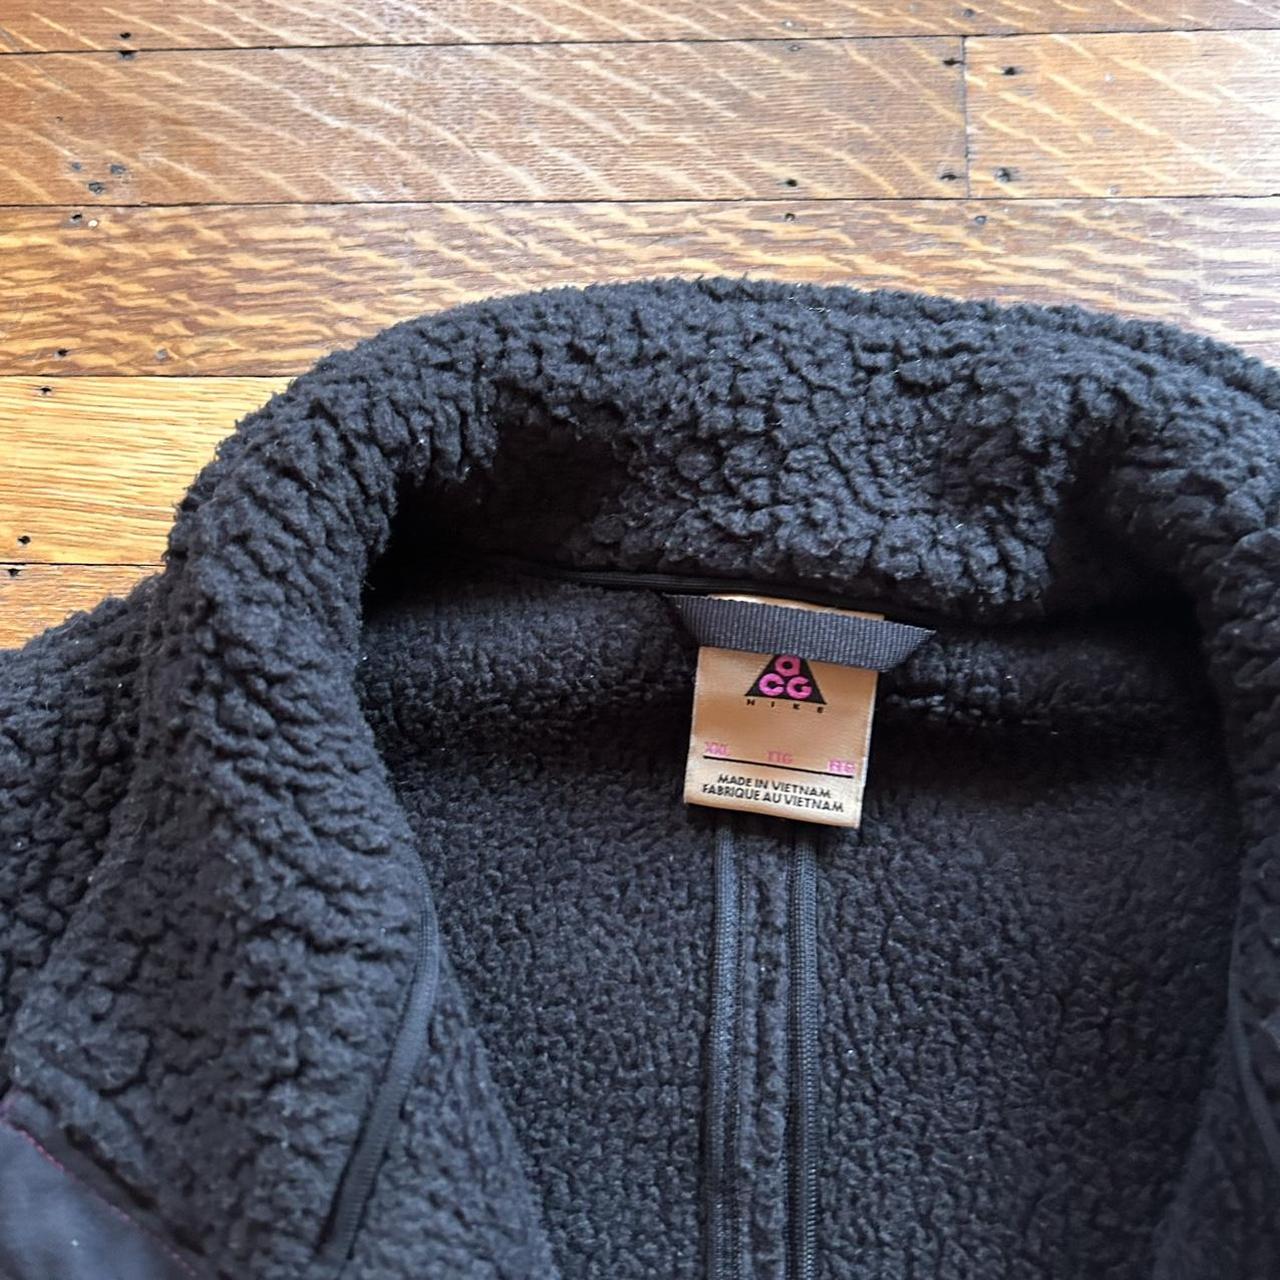 Nike ACG jacket cozy size XXL - Depop